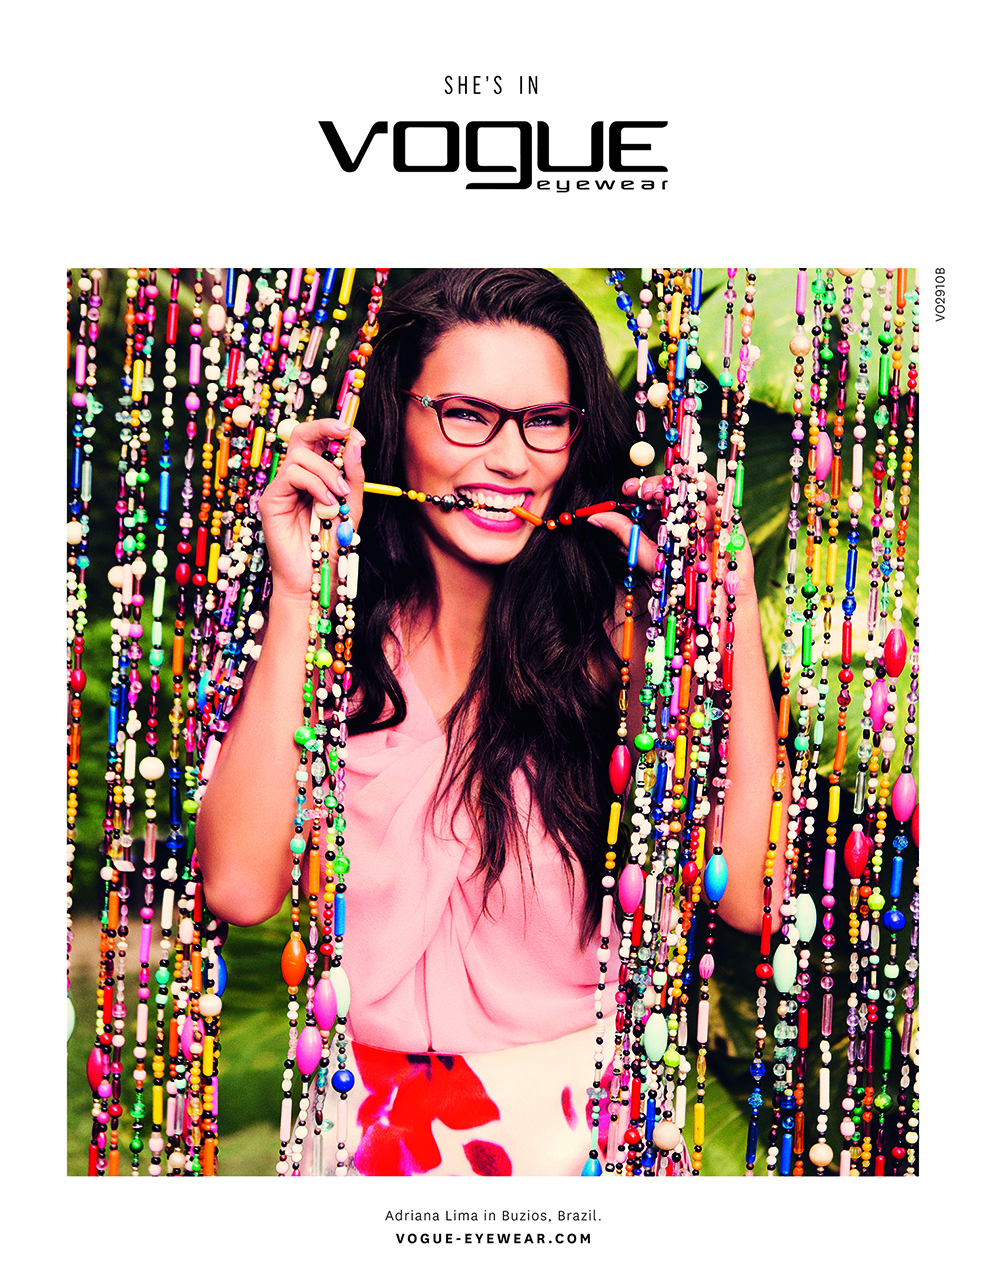 Adriana Lima y su primera campaña como embajadora de Vogue Eyewear